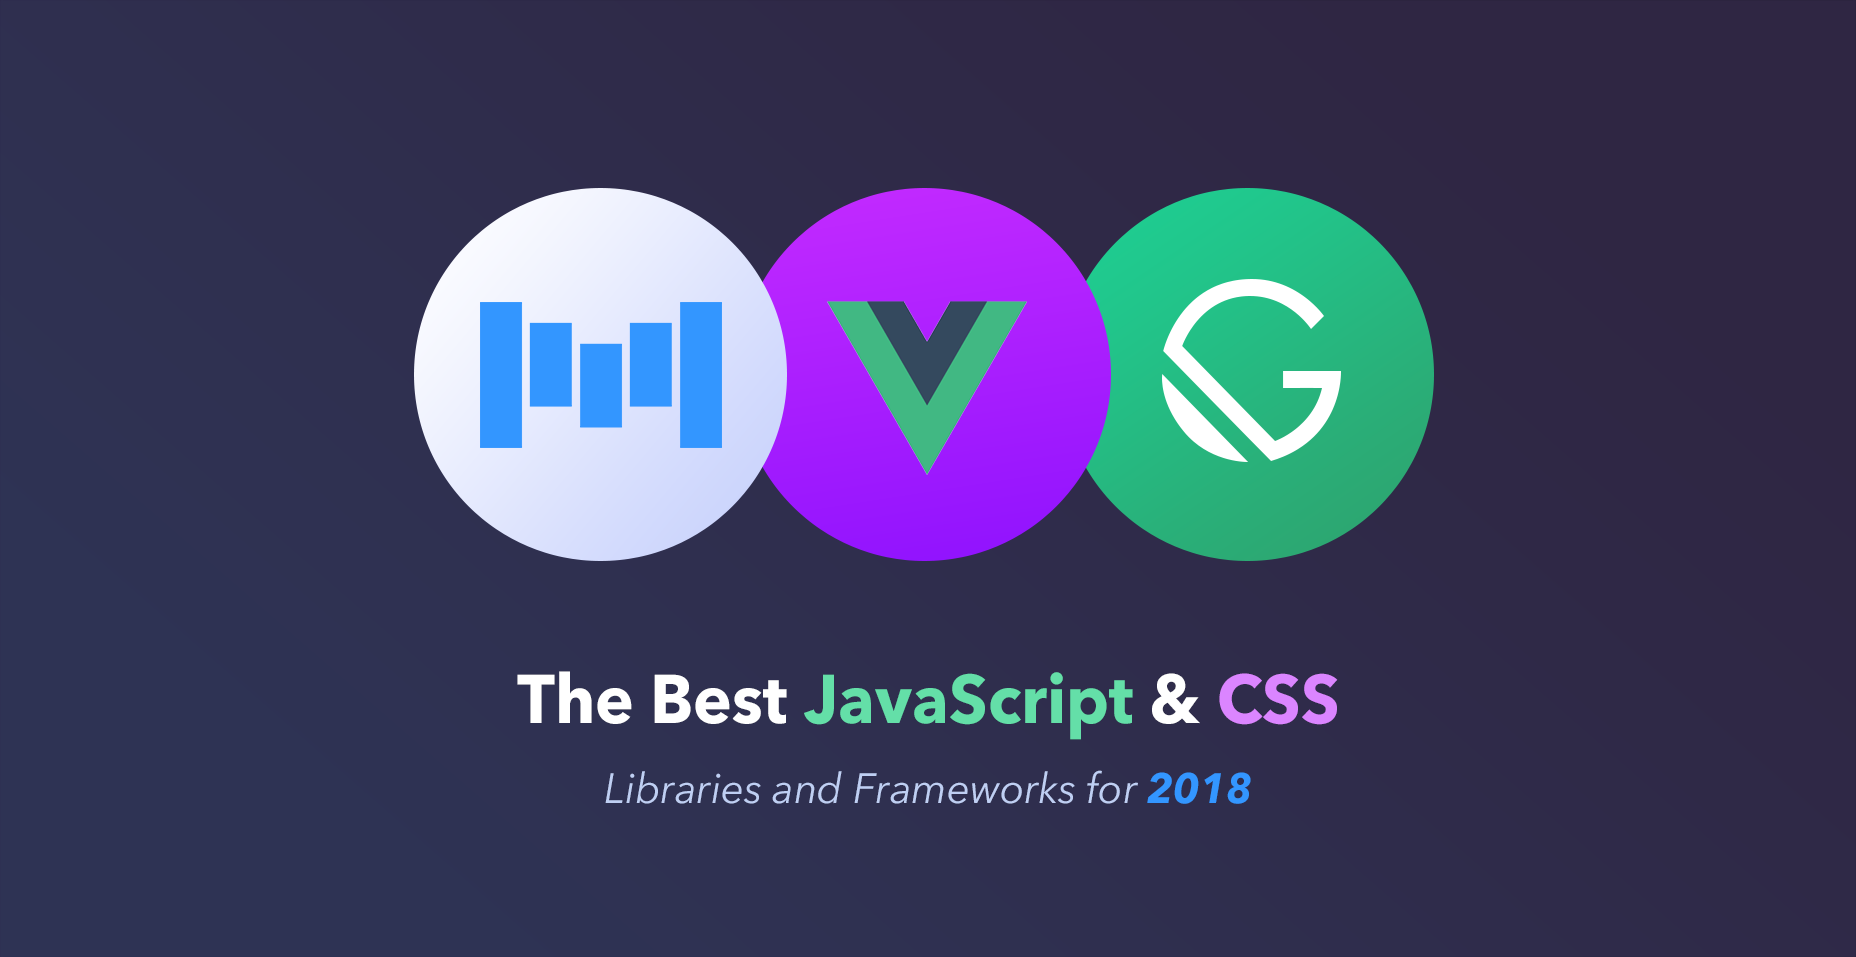 بهترین کتابخانه های جاوا اسکریپت و CSS برای سال 2018